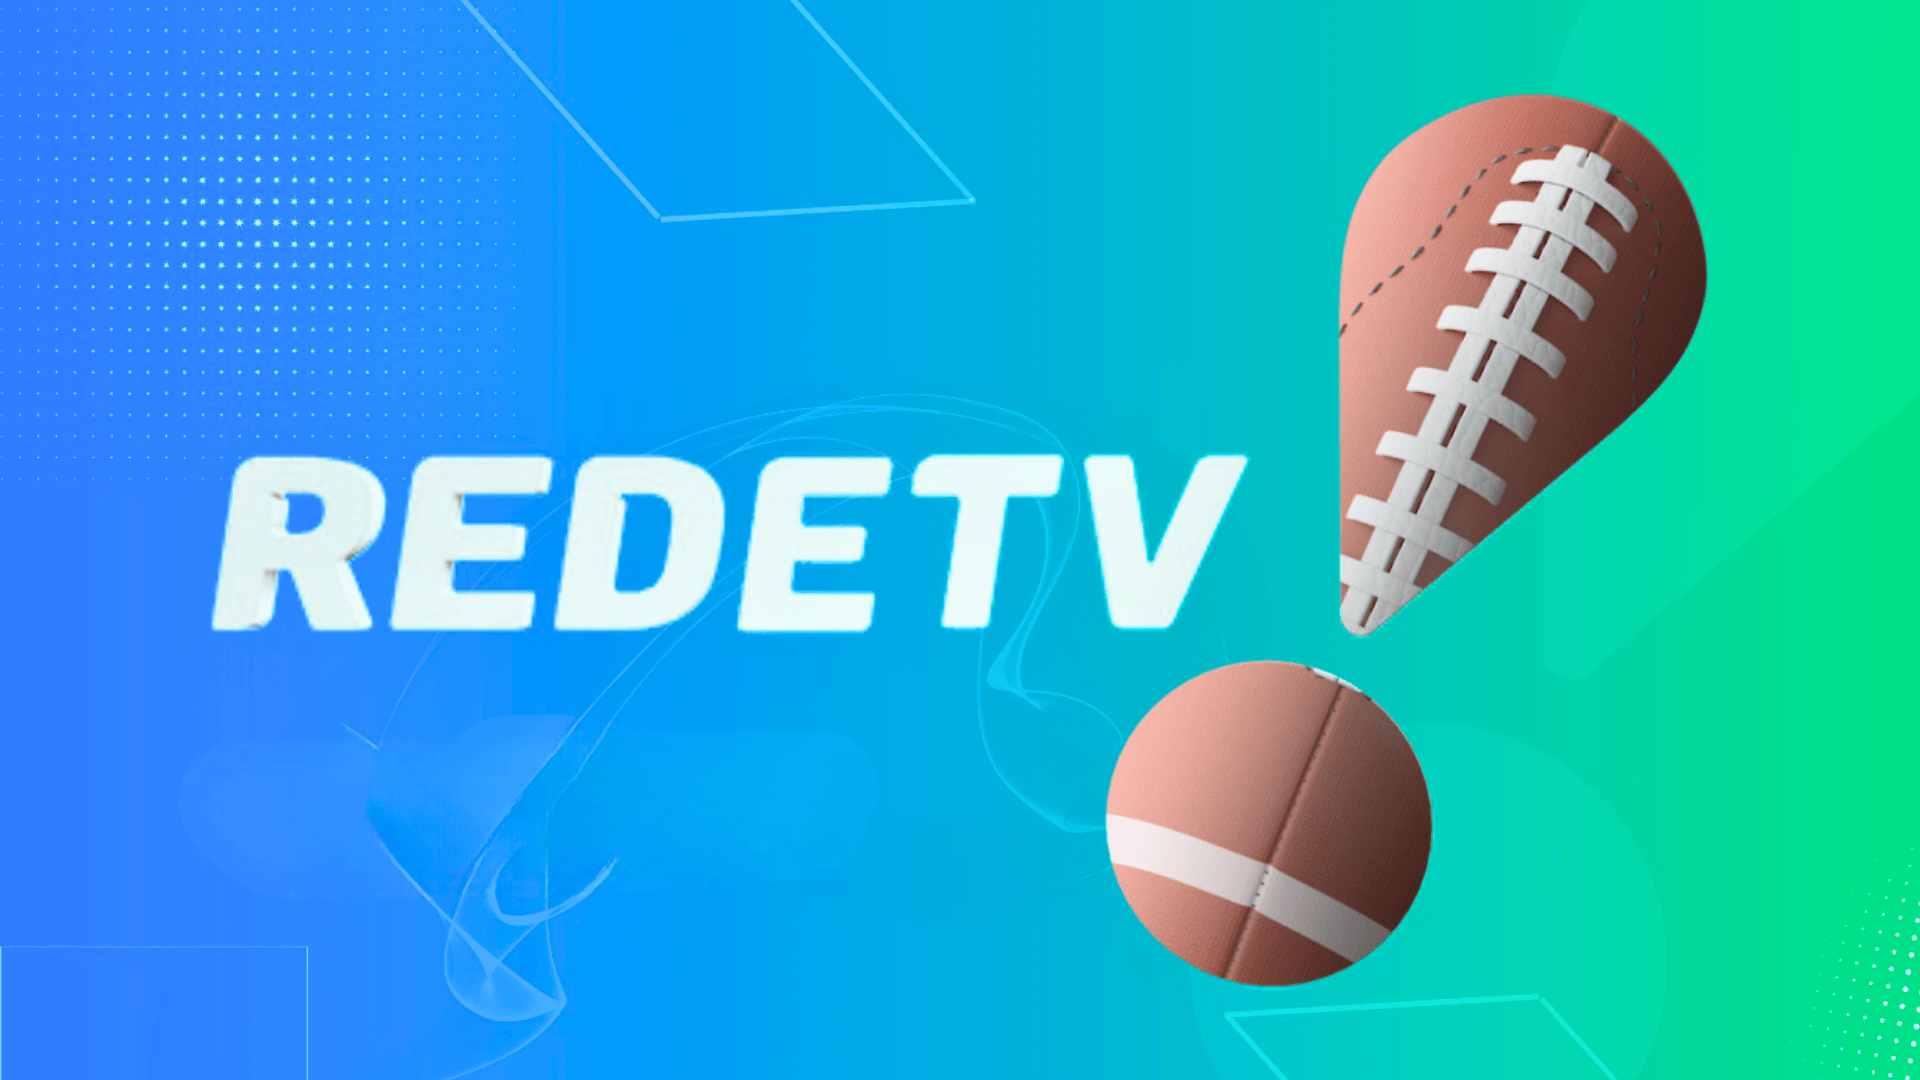 RedeTV! celebra nova temporada da NFL com mudança na marca e transmissões ao vivo